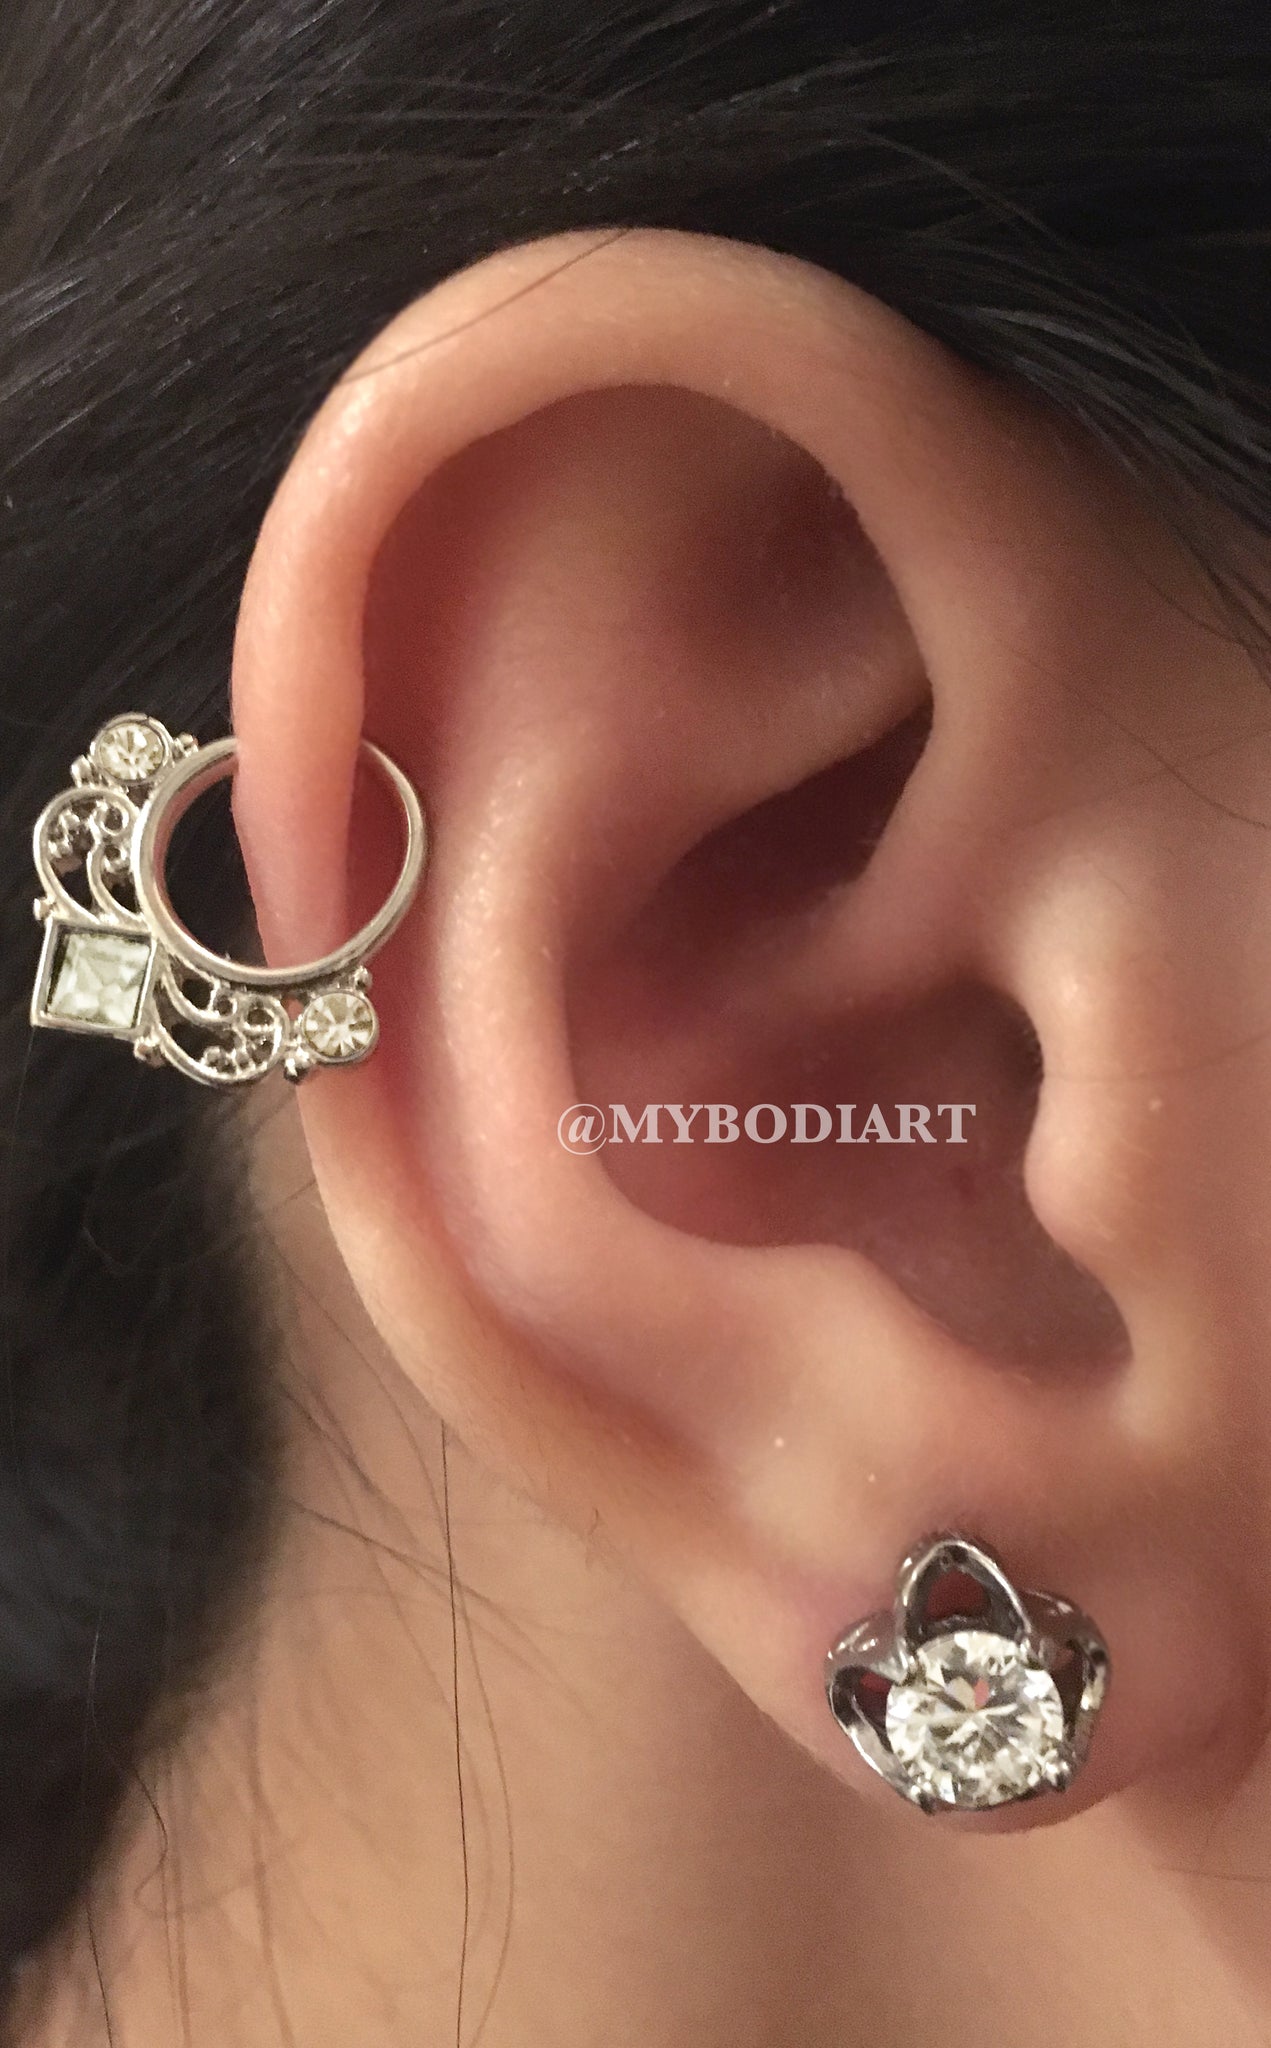 Cartilage Ear Piercing Ideas - Silver Ring Hoop Crystal Lobe Earring Stud - www.MyBodiArt.com